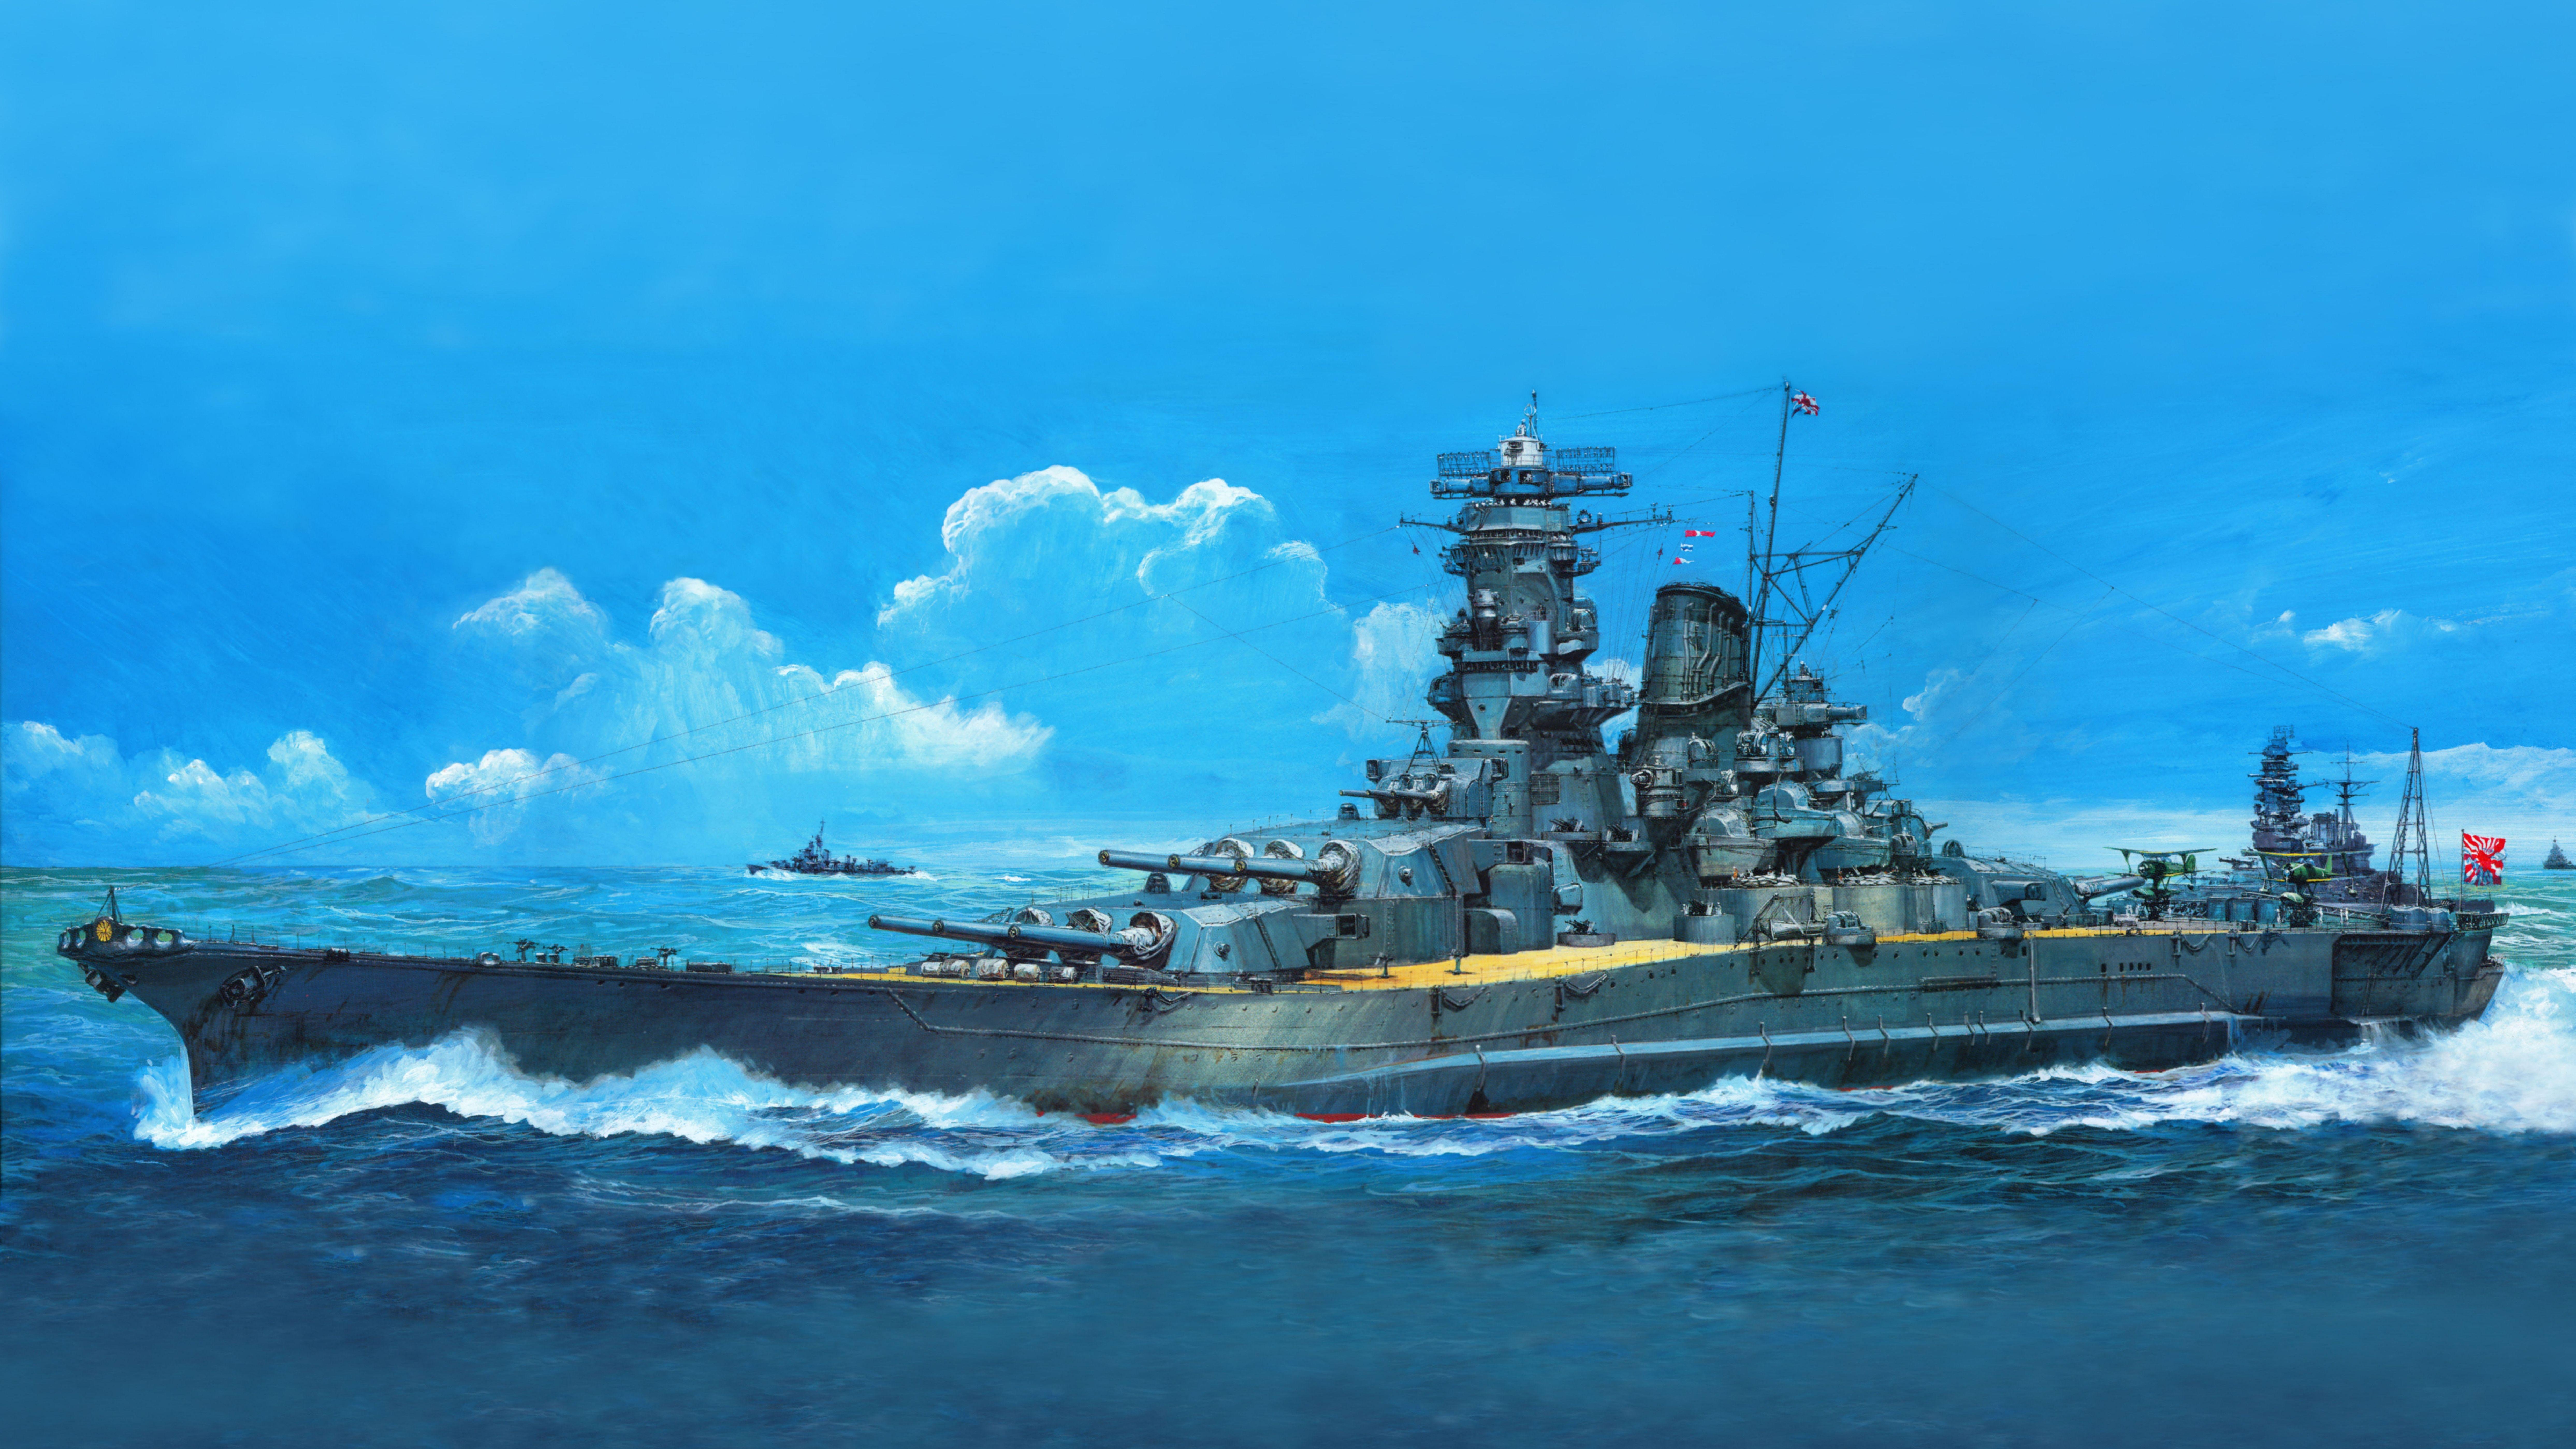 Yamato 8k Ultra HD Wallpaper and Background Imagex5597